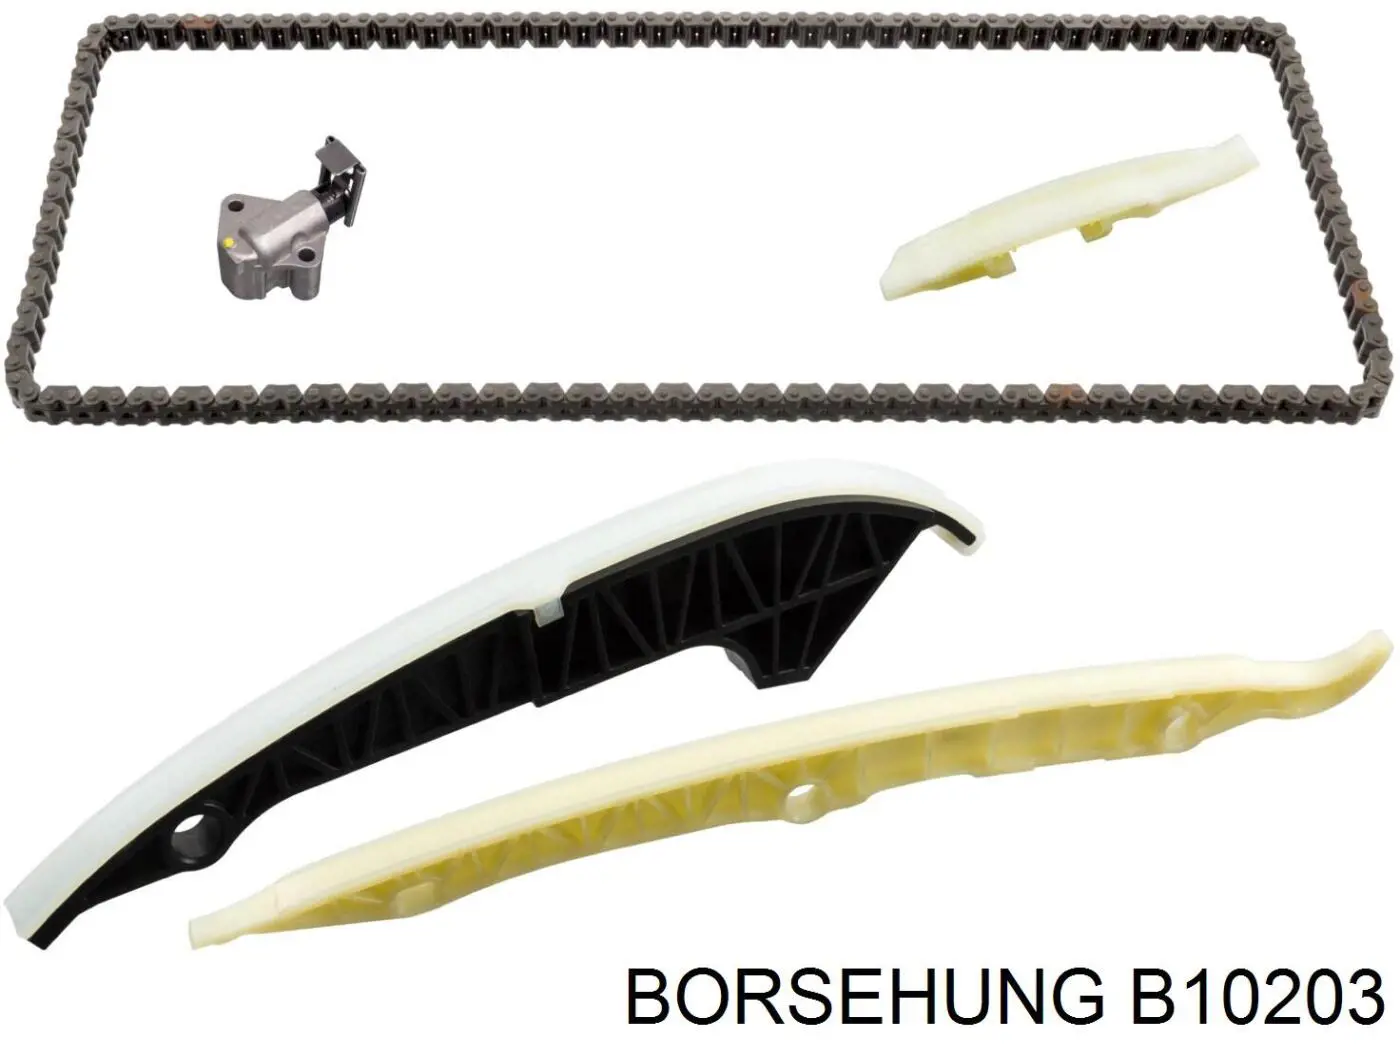 B10203 Borsehung cadeia do mecanismo de distribuição de gás, kit